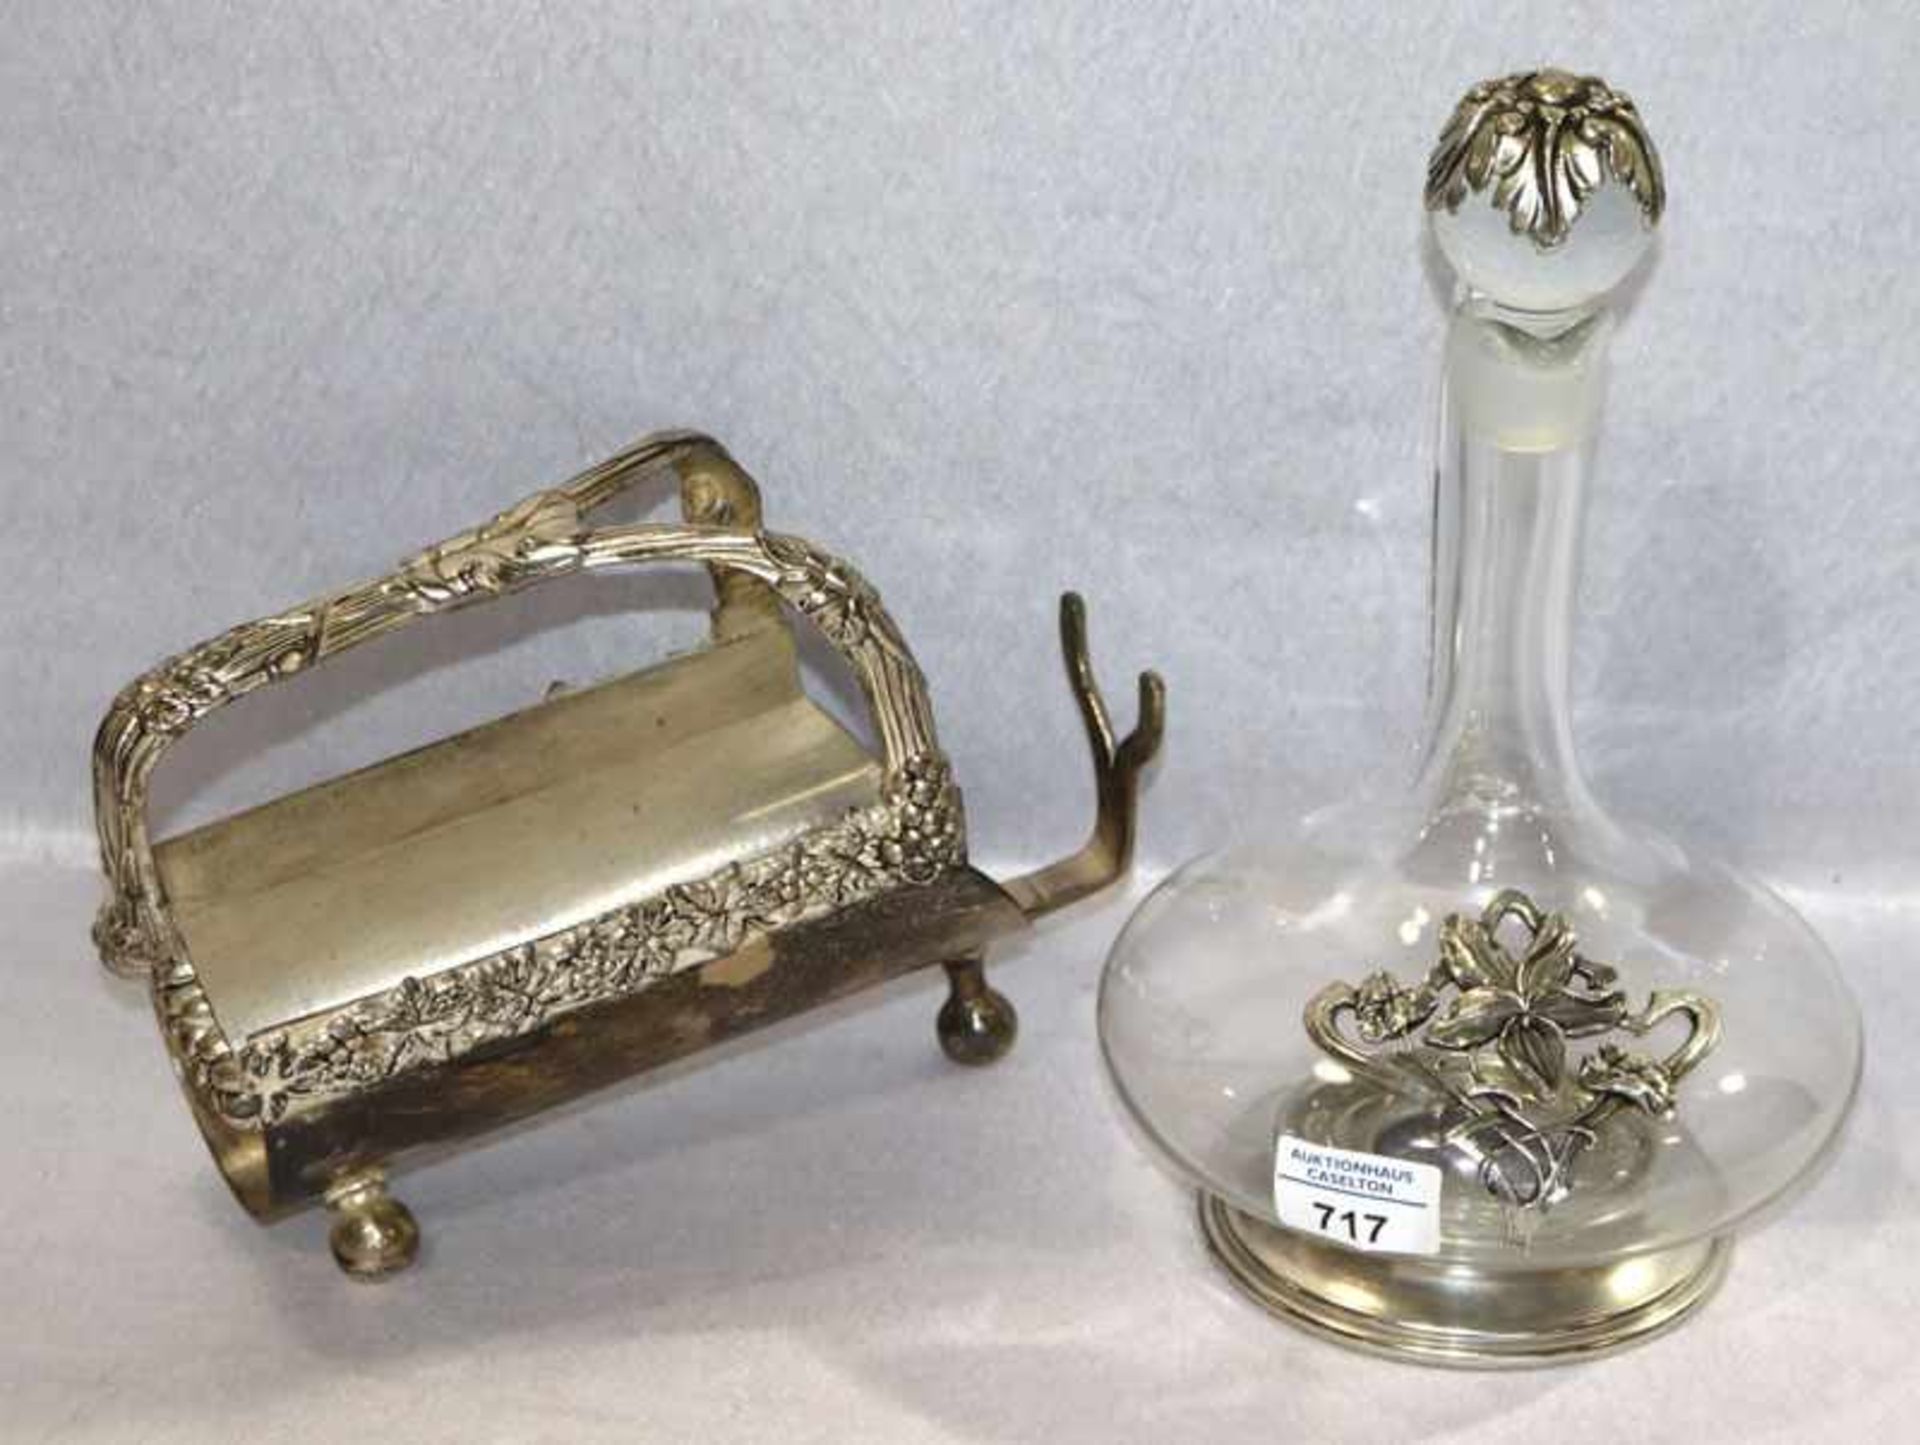 Glas Weindekanter mit Zinndekor, H 30 cm, D 19 cm, und Weinflaschenständer mit Traubendekor, H 18